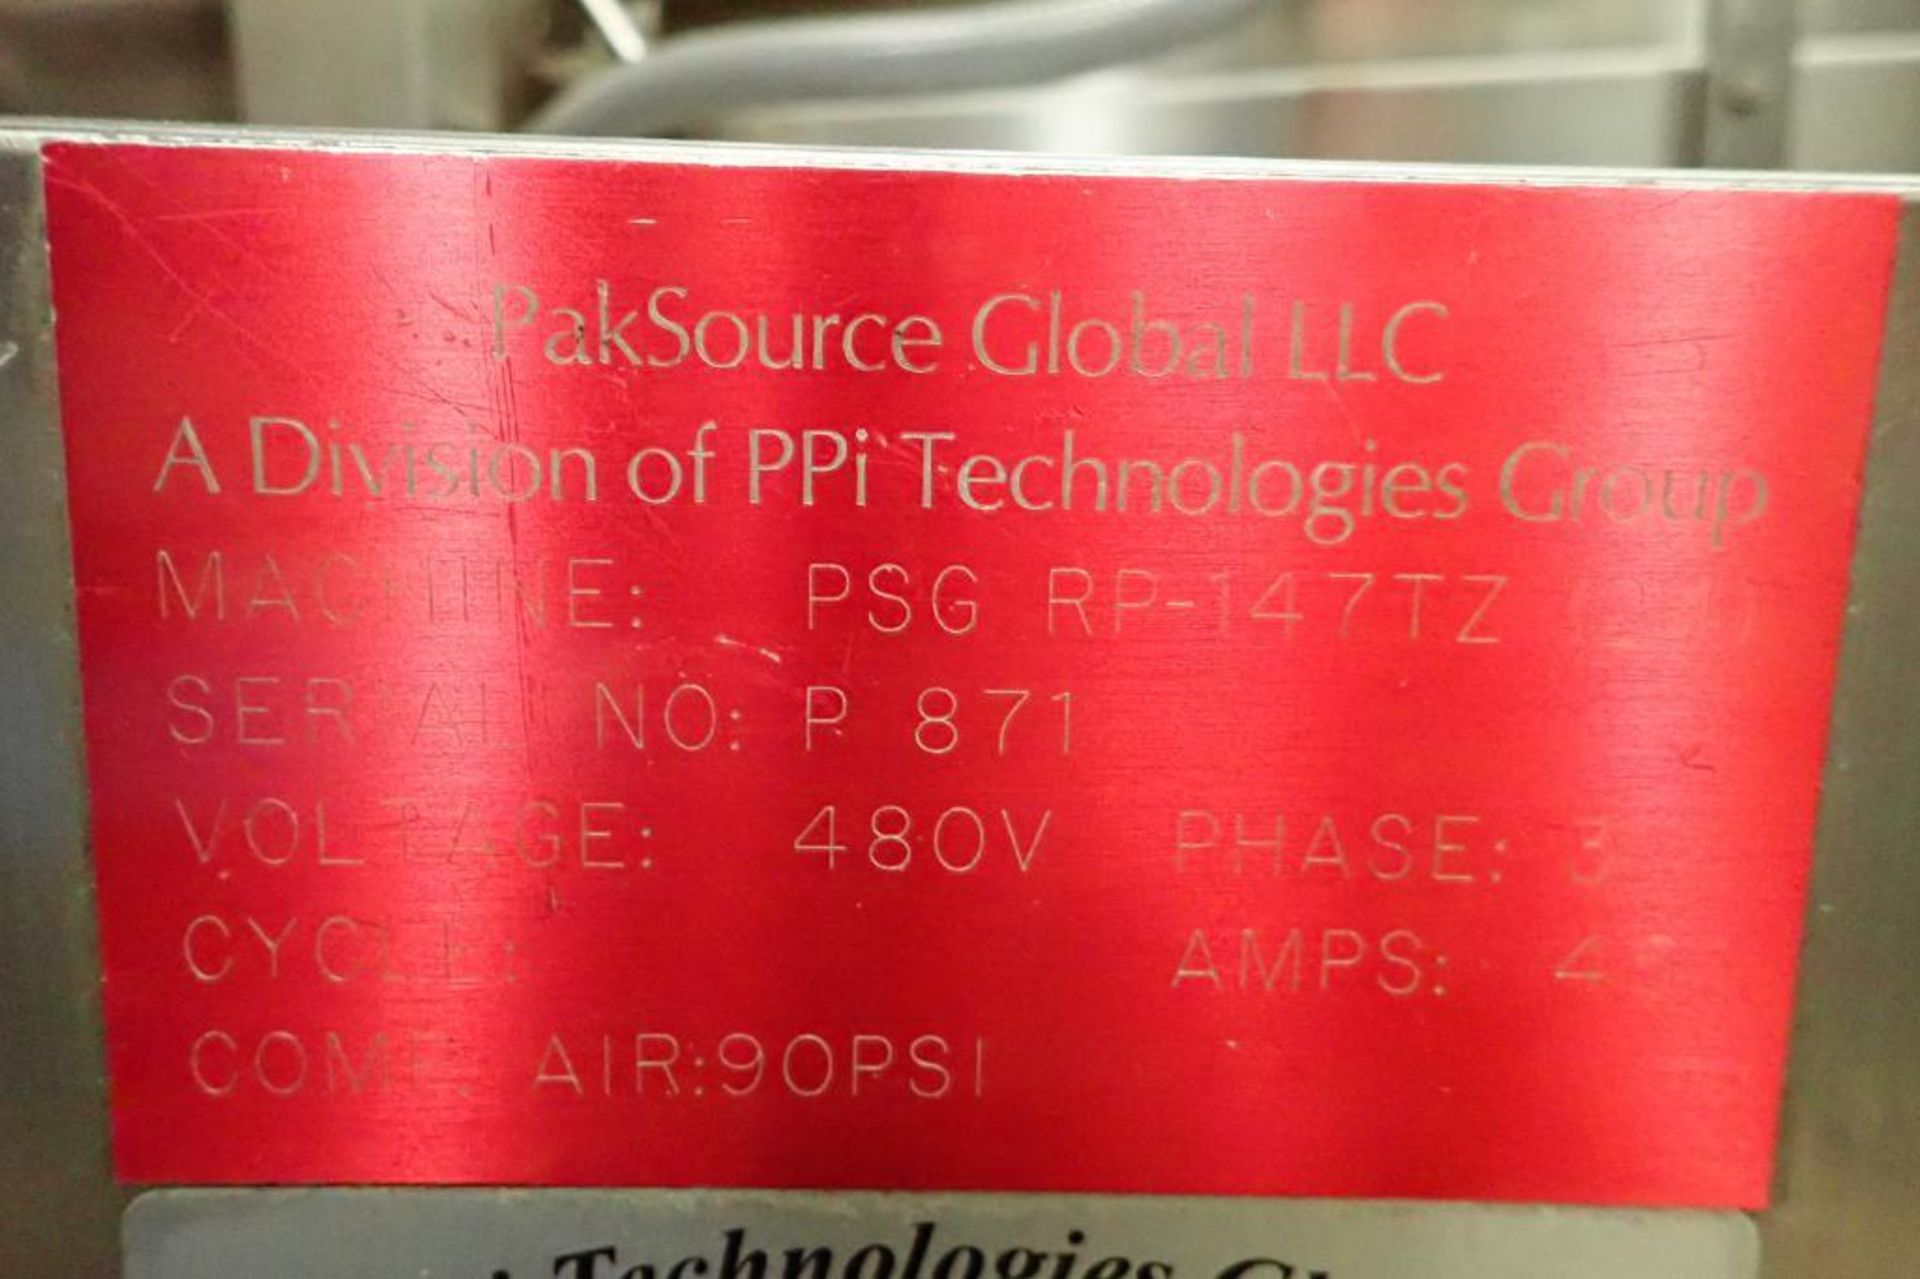 PSG LEE pre-formed stand up pouch filler, Model RP-147TZ-24, SN 871, 2 station filler, 2-up loading, - Image 11 of 13